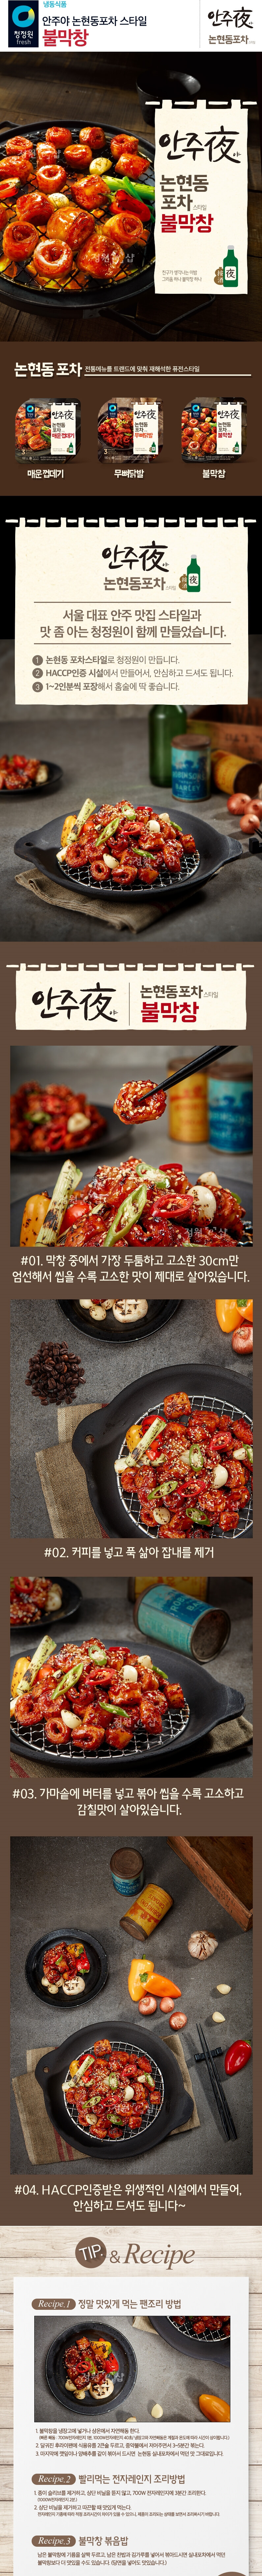 韓國食品-[CJO] Spicy Grilled Pig Entrails 160g